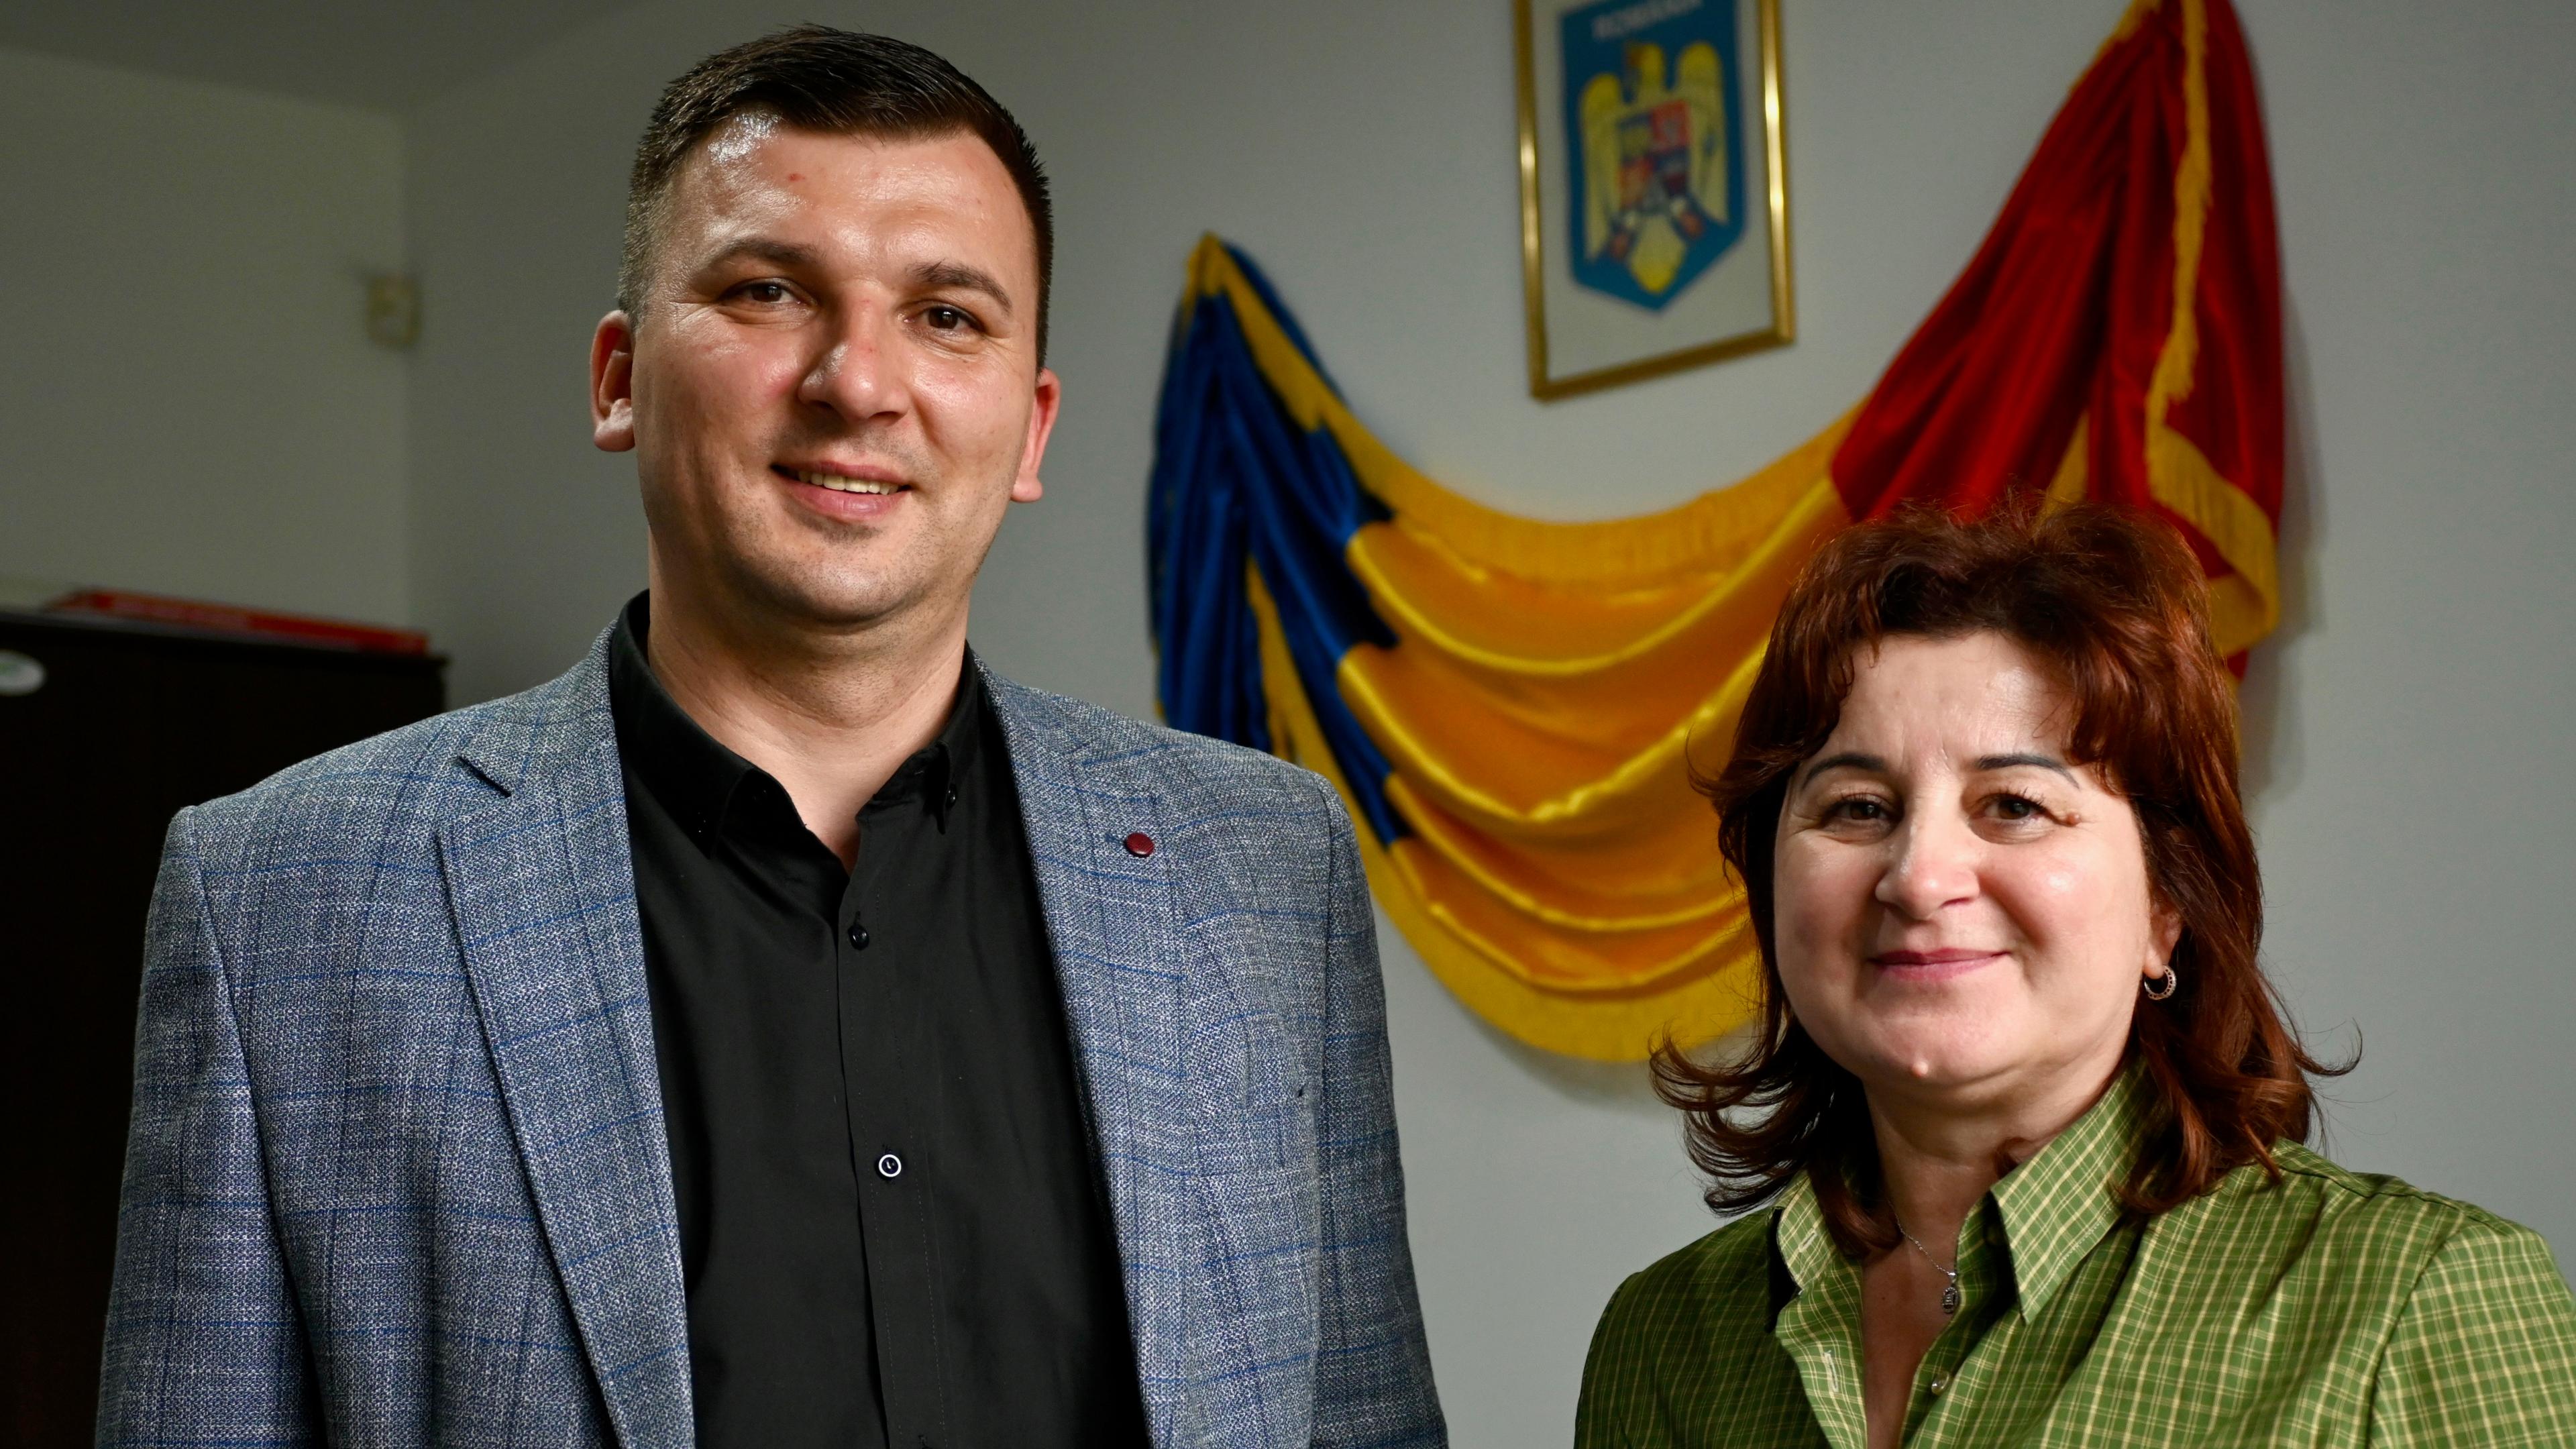 A photo of Mayor Dragos Voicu and Deputy Mayor Maria Husu